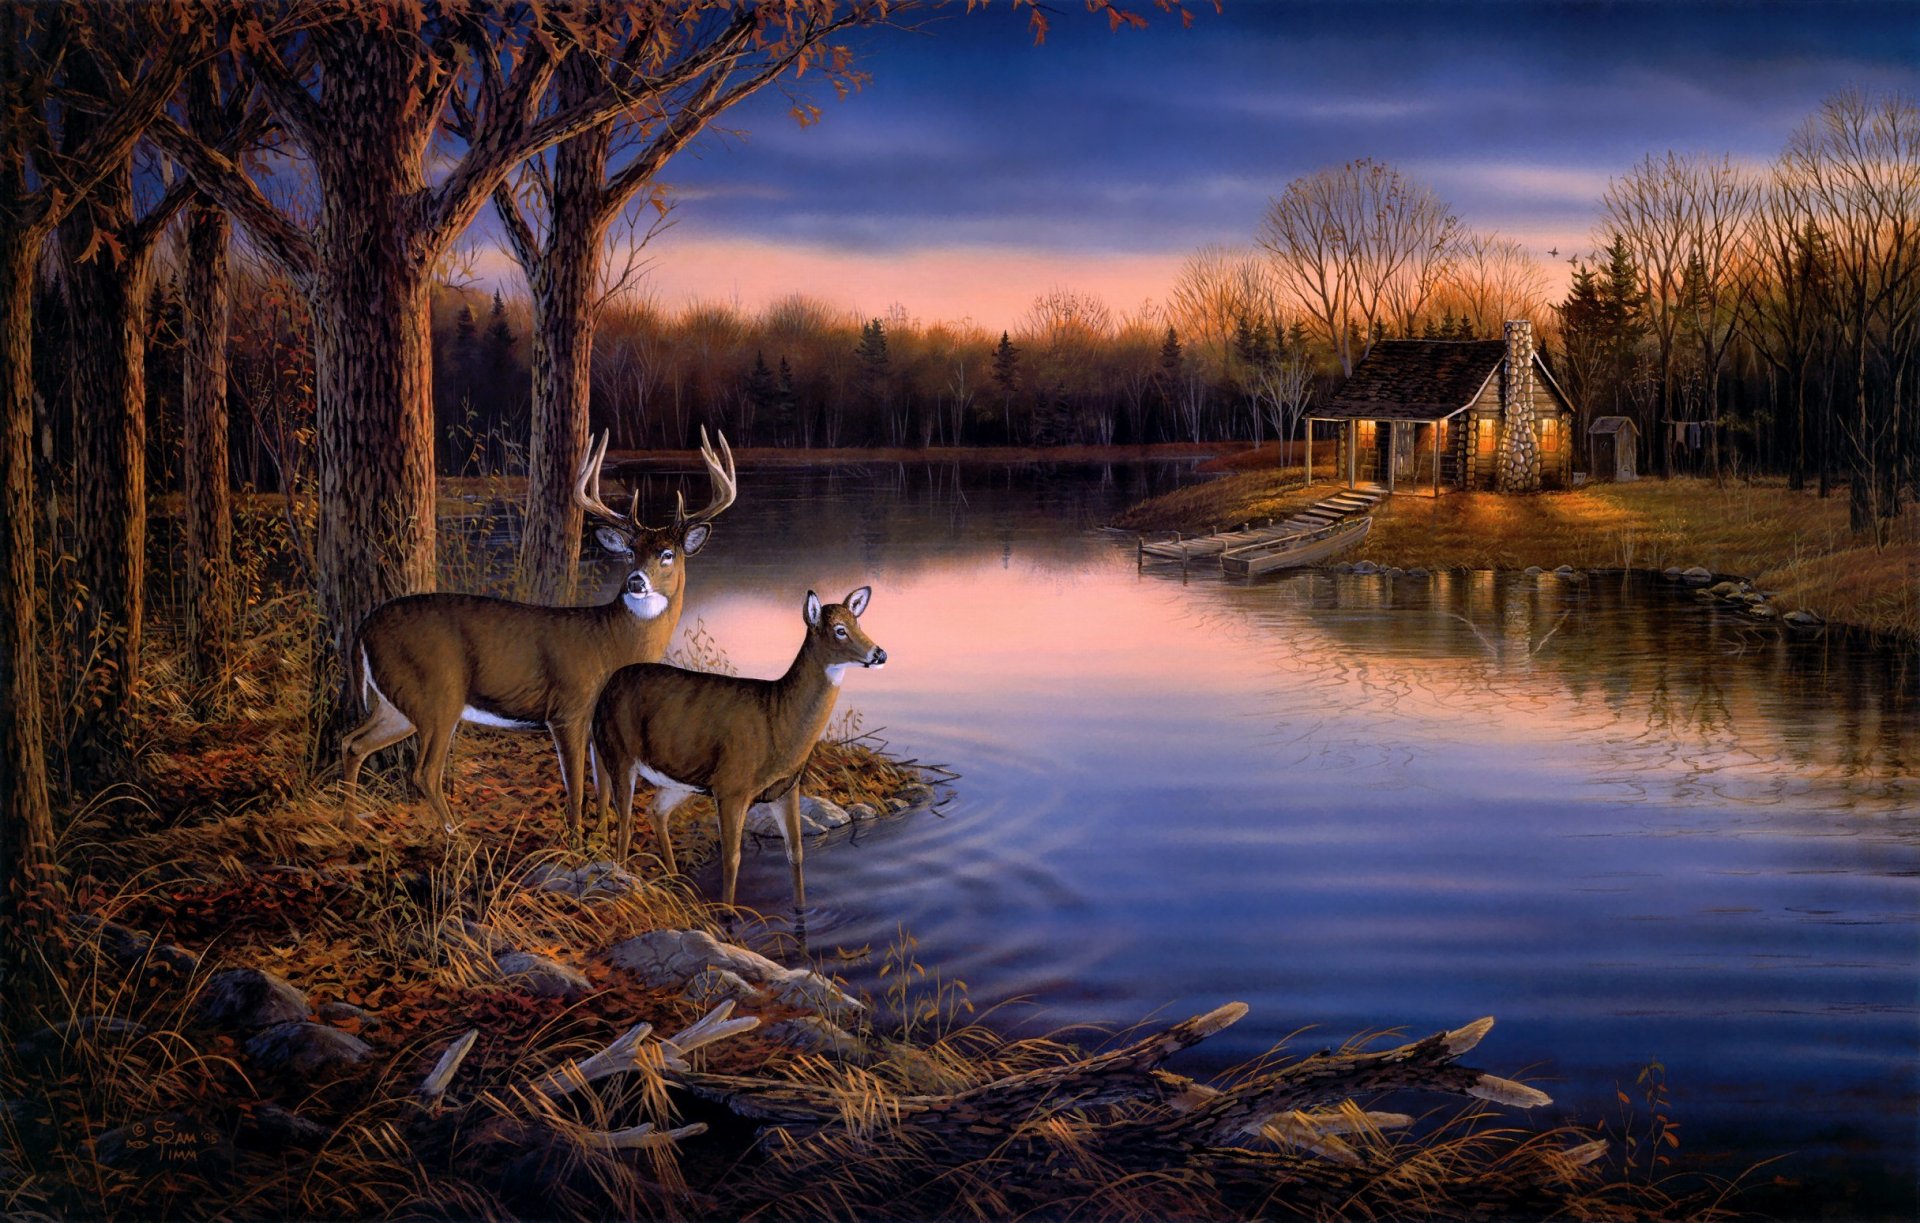 сэм тимм тихое вечер живопись искусство животные олени вечер закат осень природа лес деревья озеро пруд река вода лодка дом